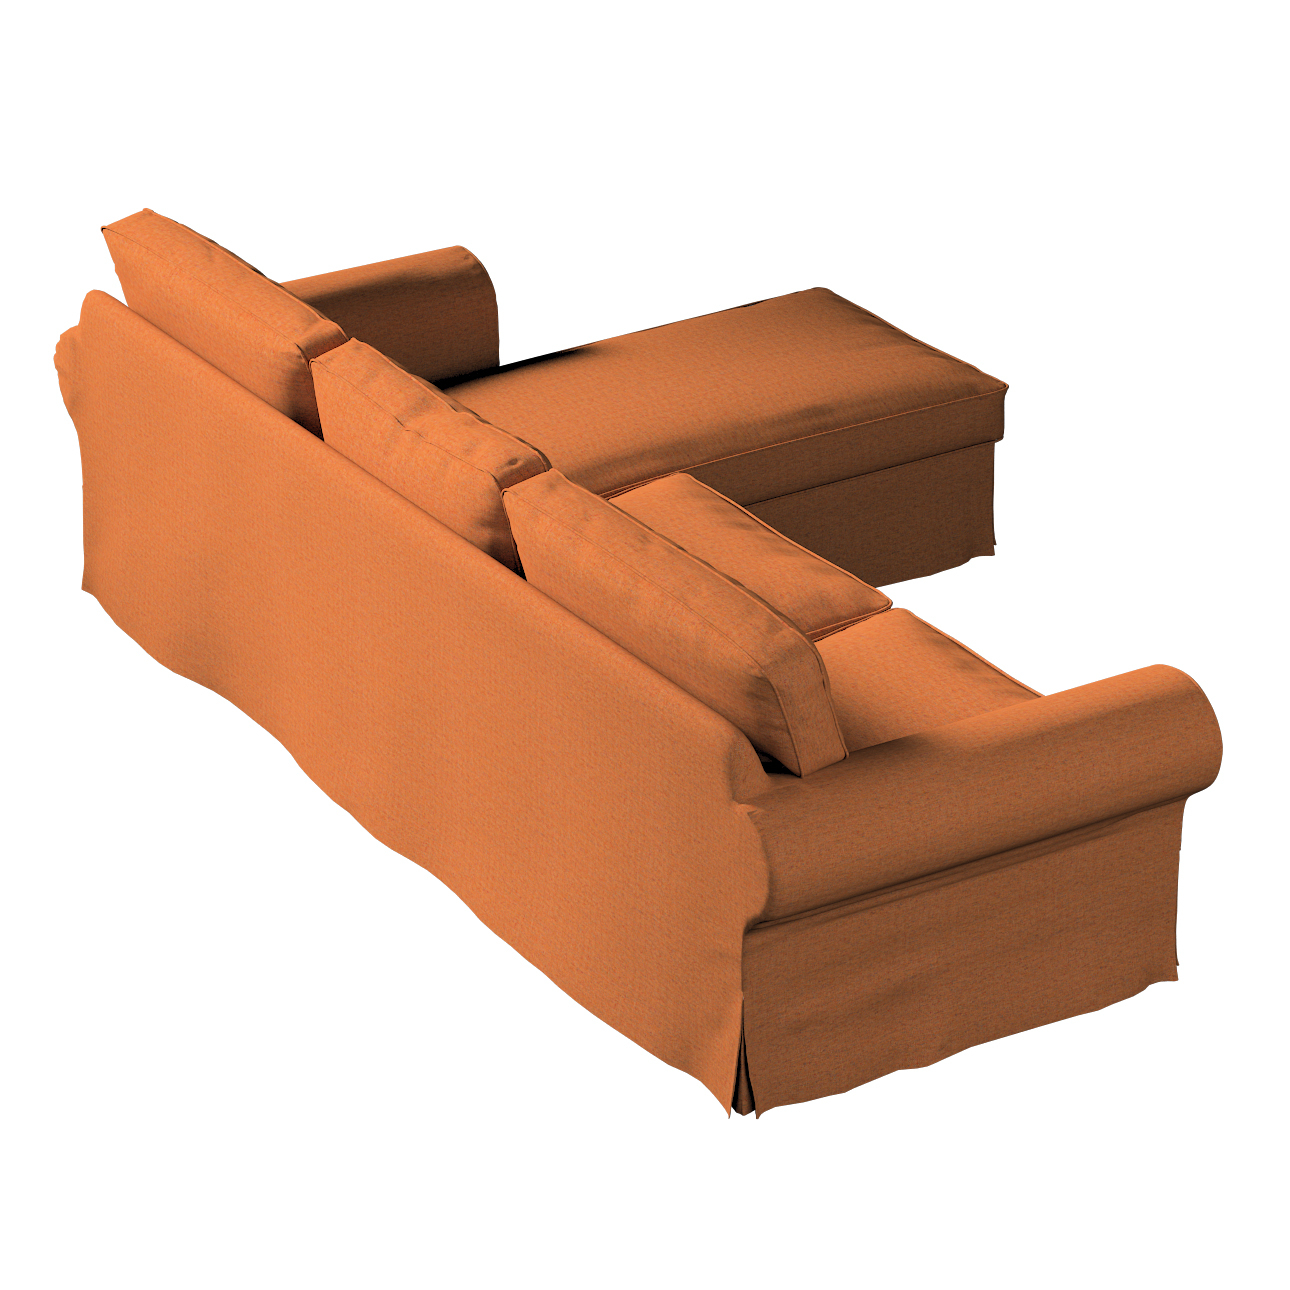 Bezug für Ektorp 2-Sitzer Sofa mit Recamiere, orange, Ektorp 2-Sitzer Sofab günstig online kaufen